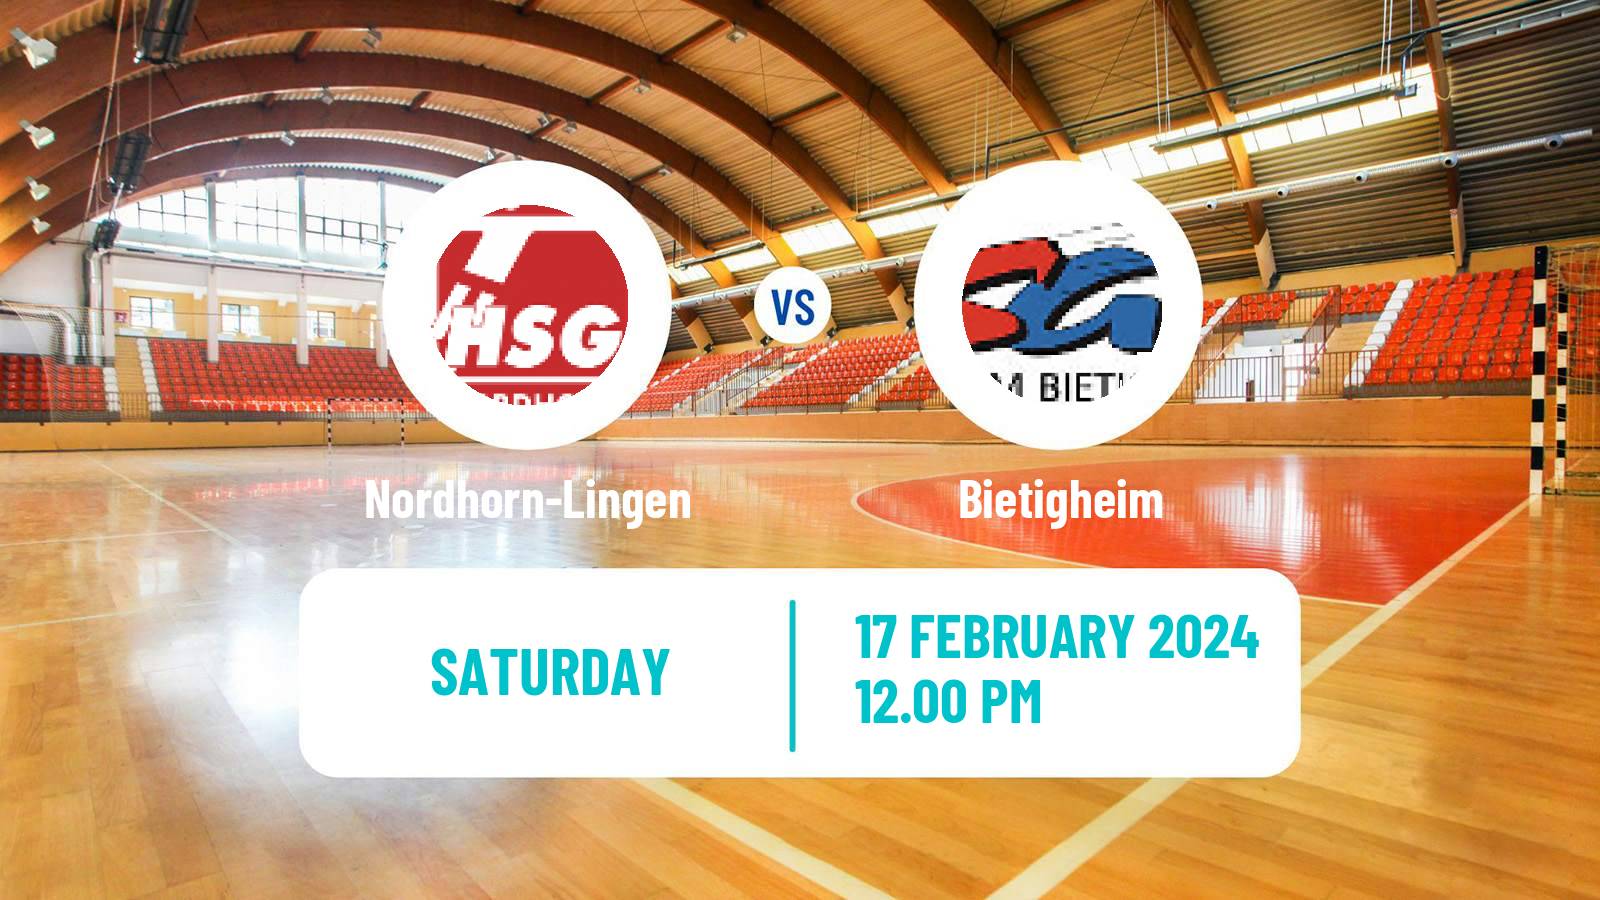 Handball German 2 Bundesliga Handball Nordhorn-Lingen - Bietigheim